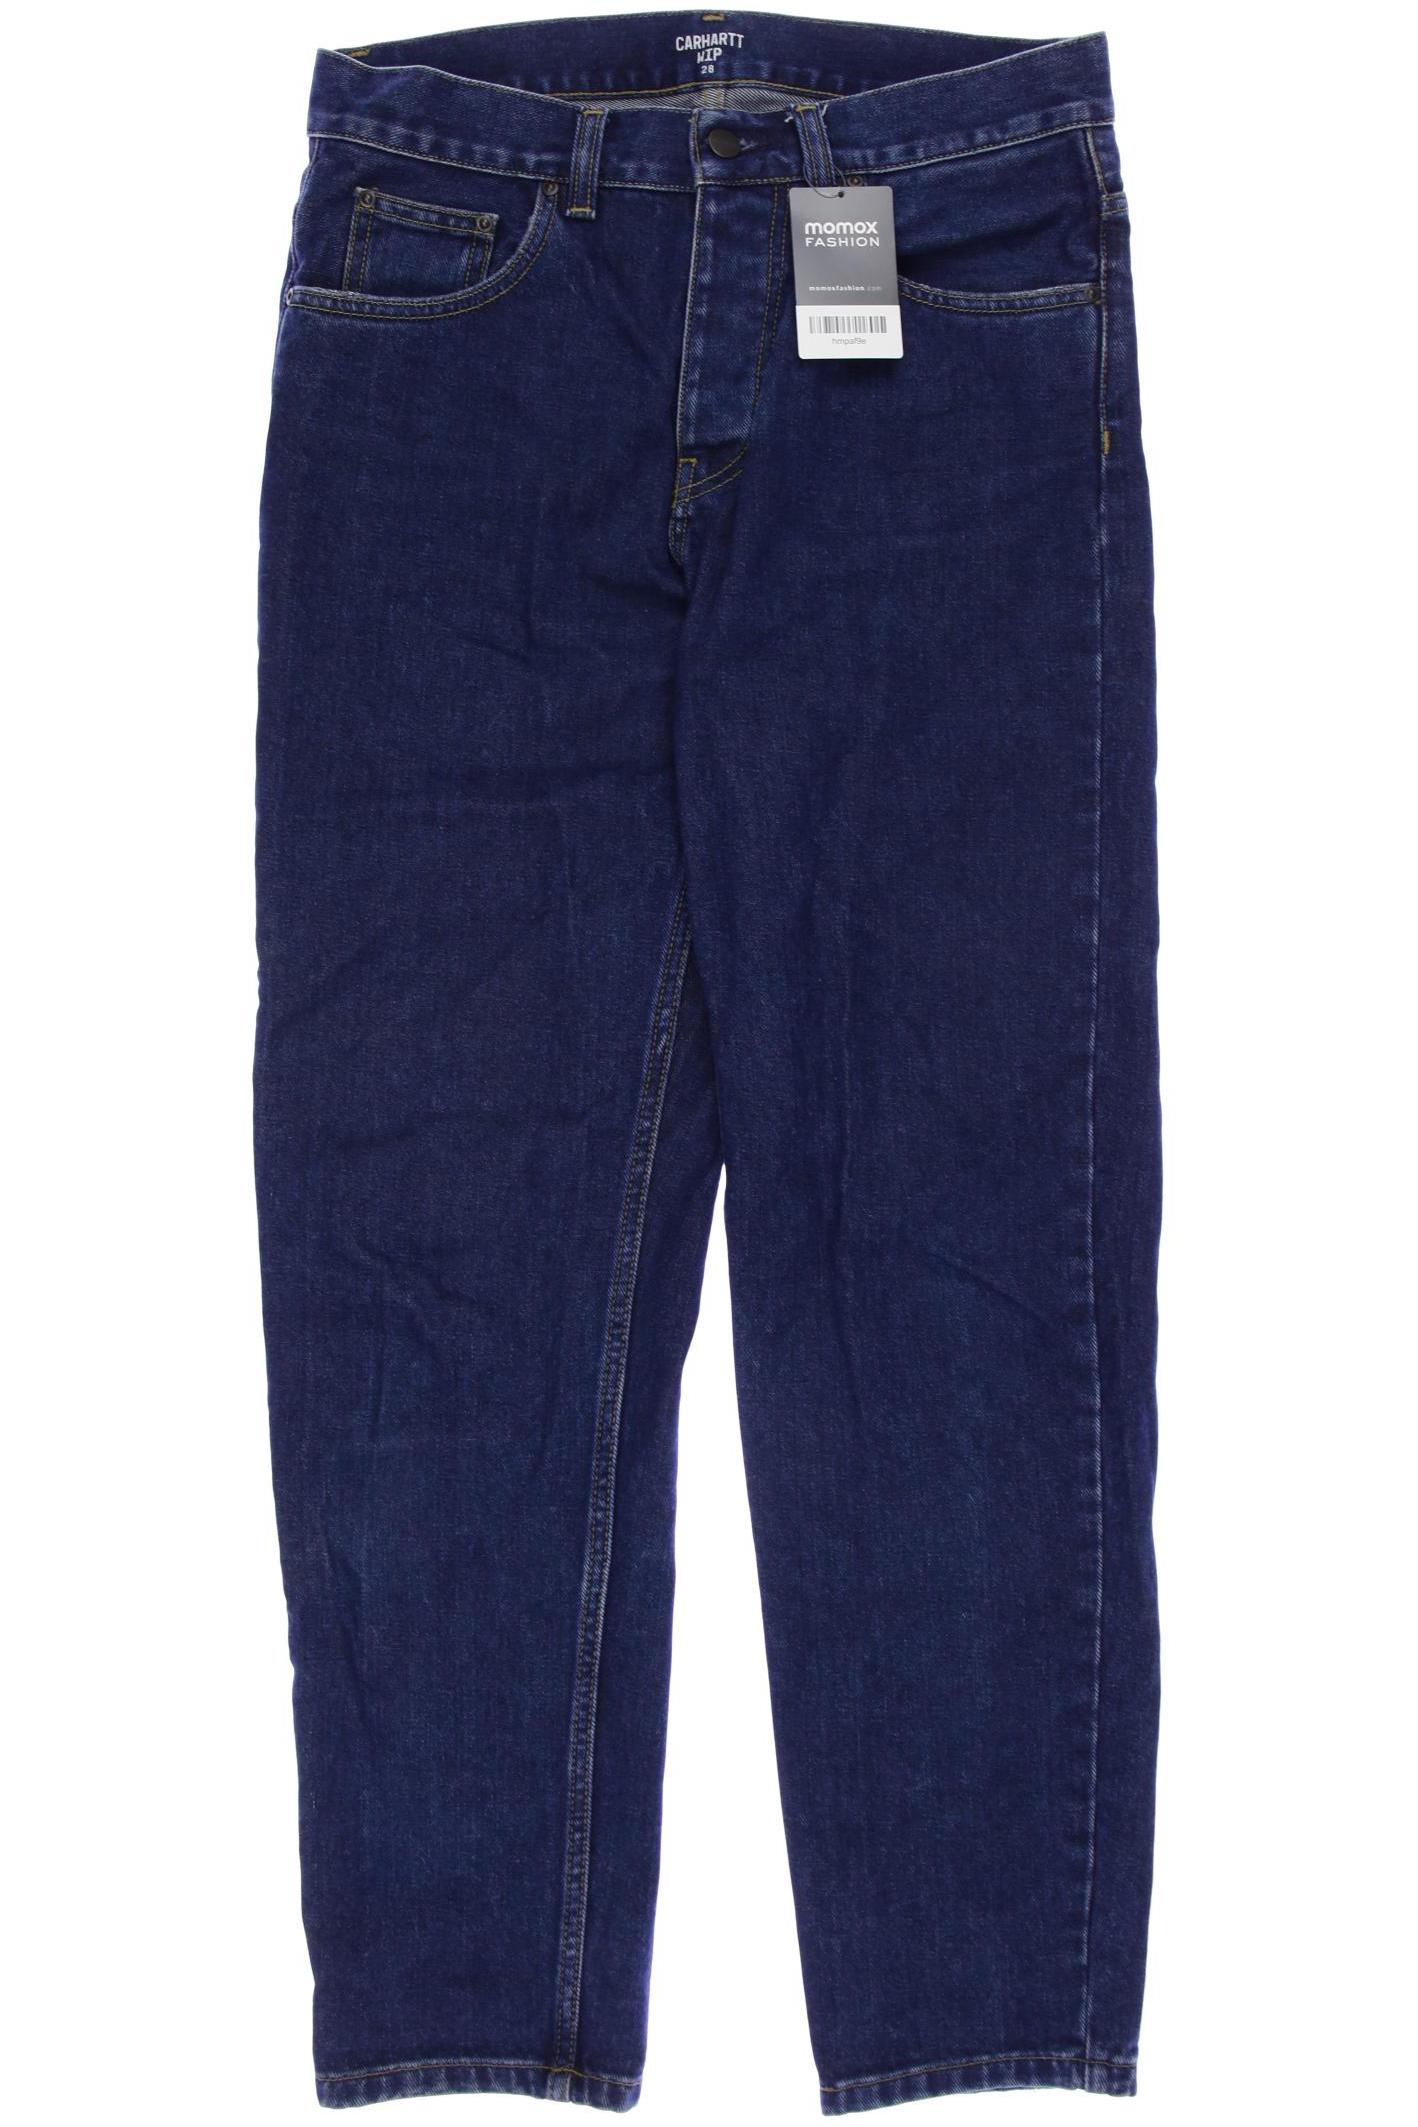 Carhartt Herren Jeans, blau von Carhartt